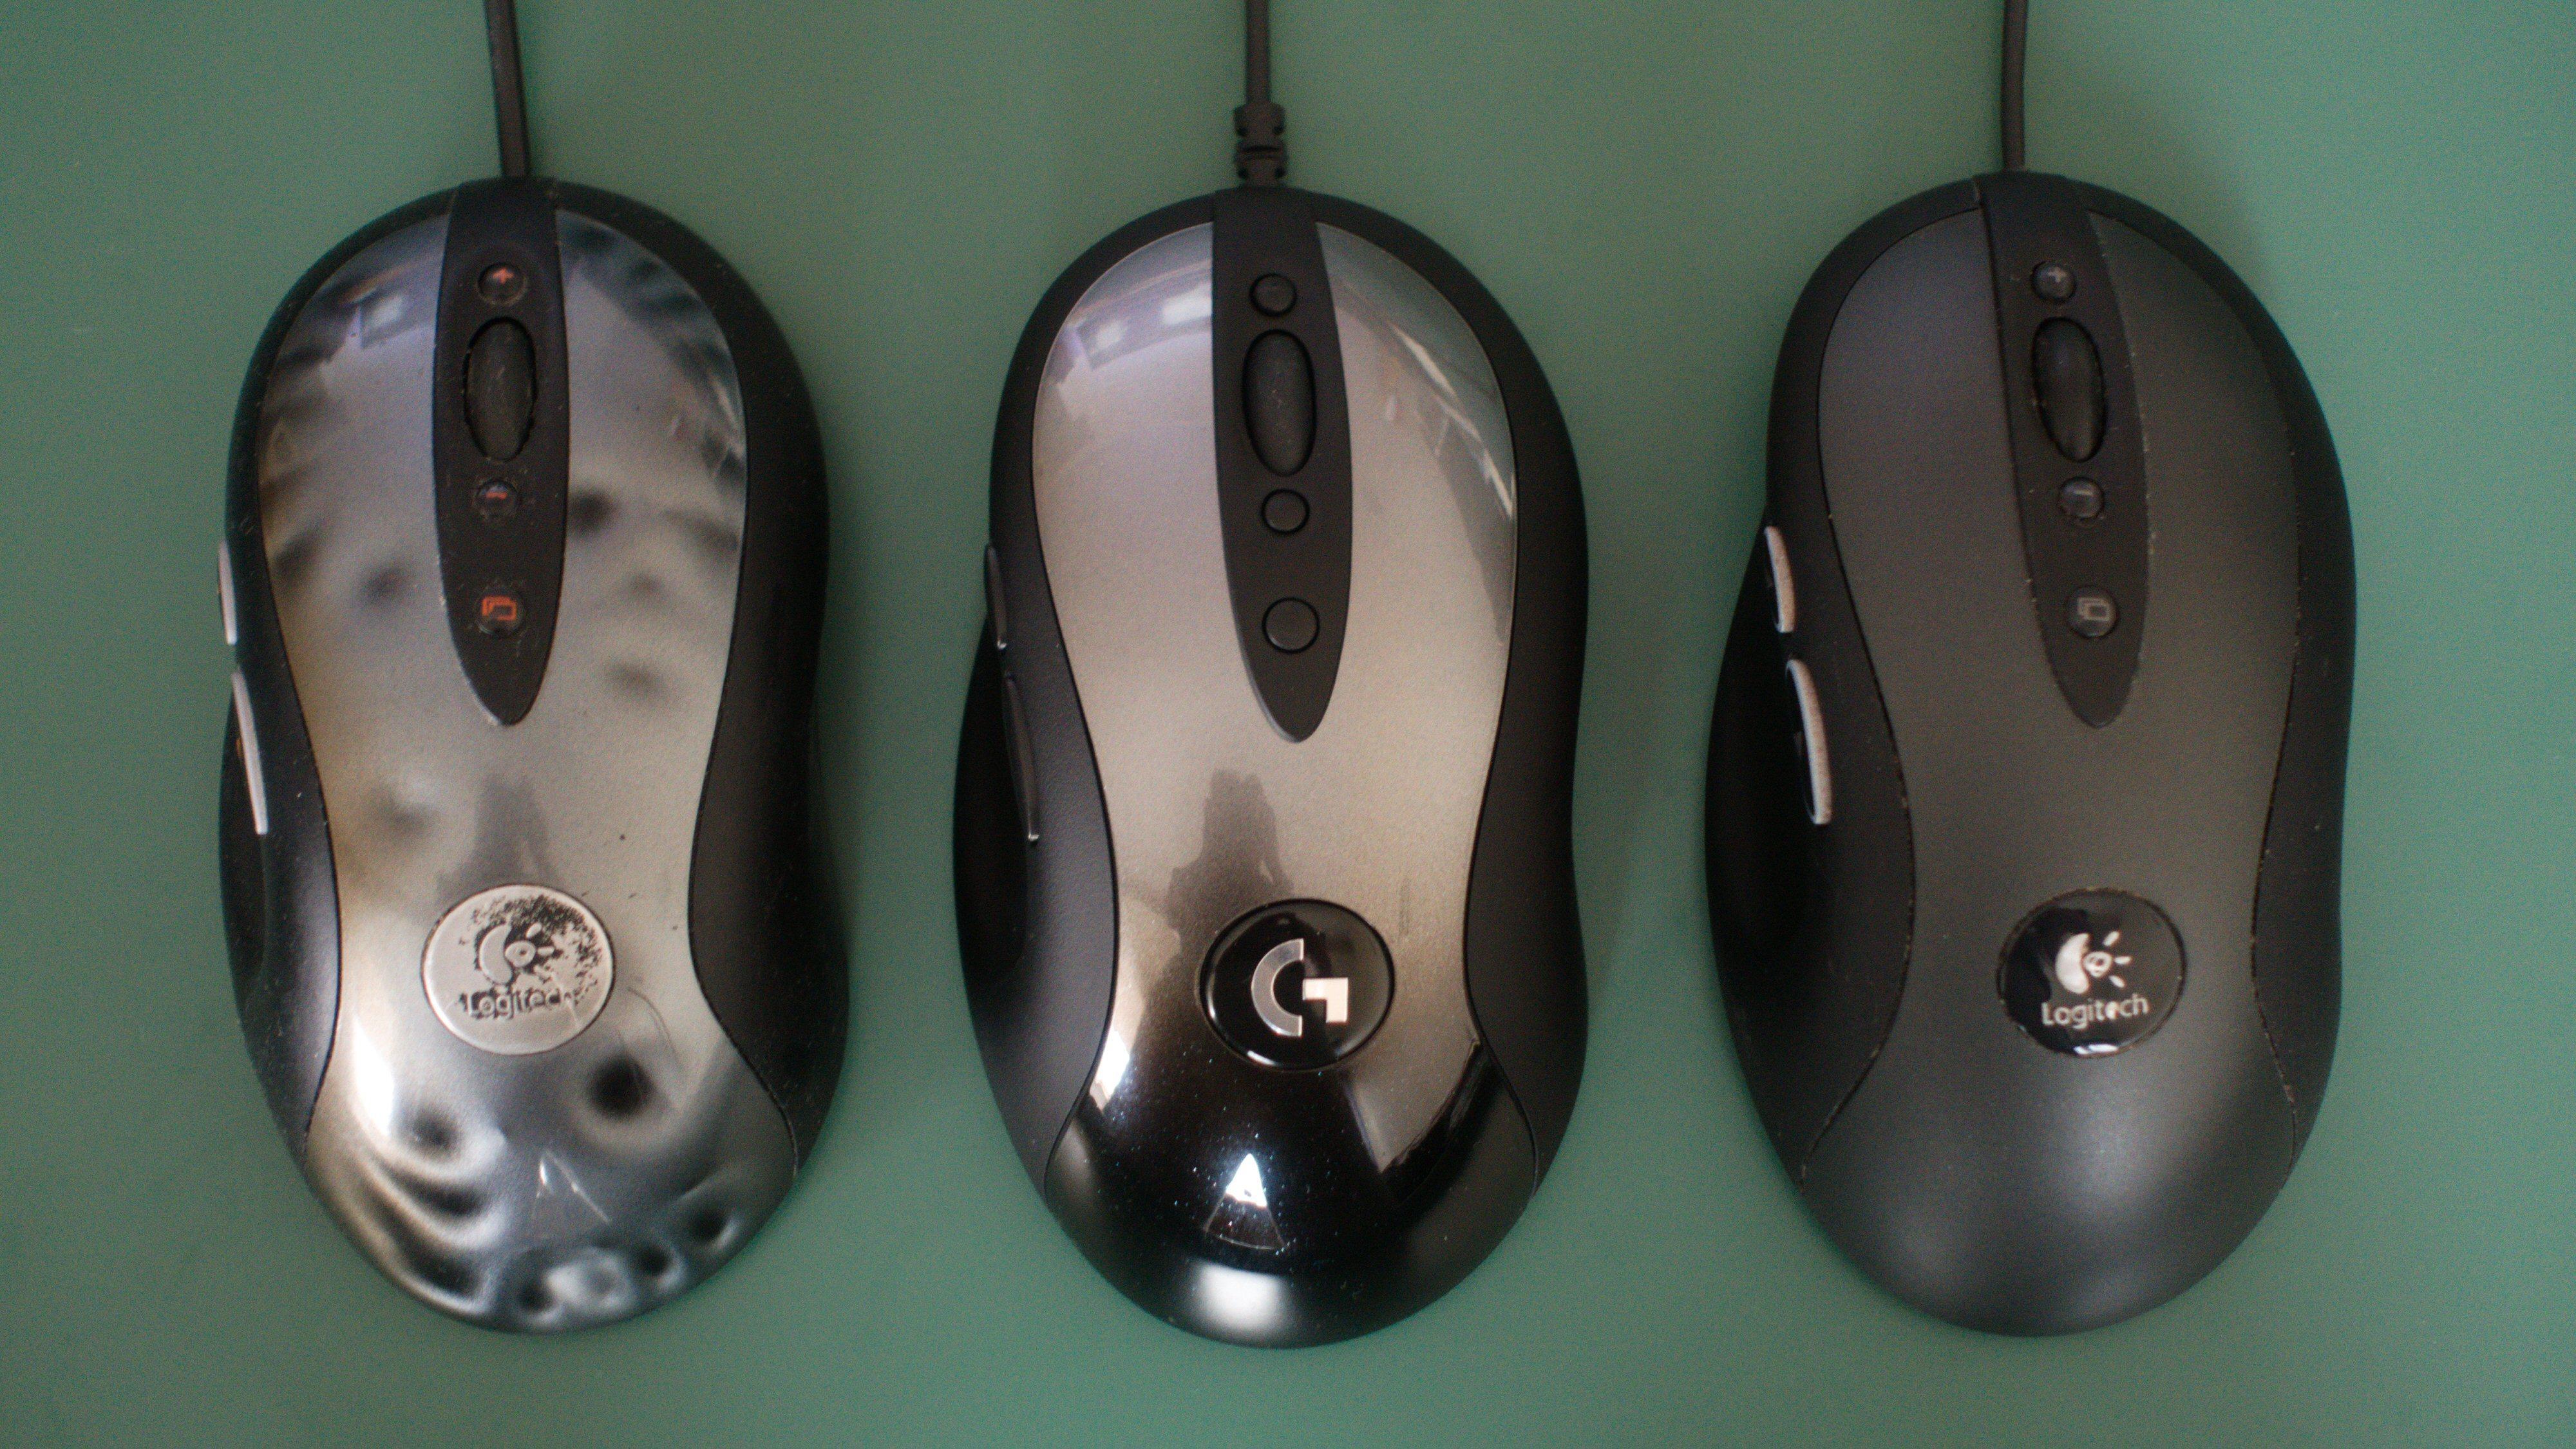 Fra venstre: Logitech MX518 (godt slitt), den nye G MX518 og G400.